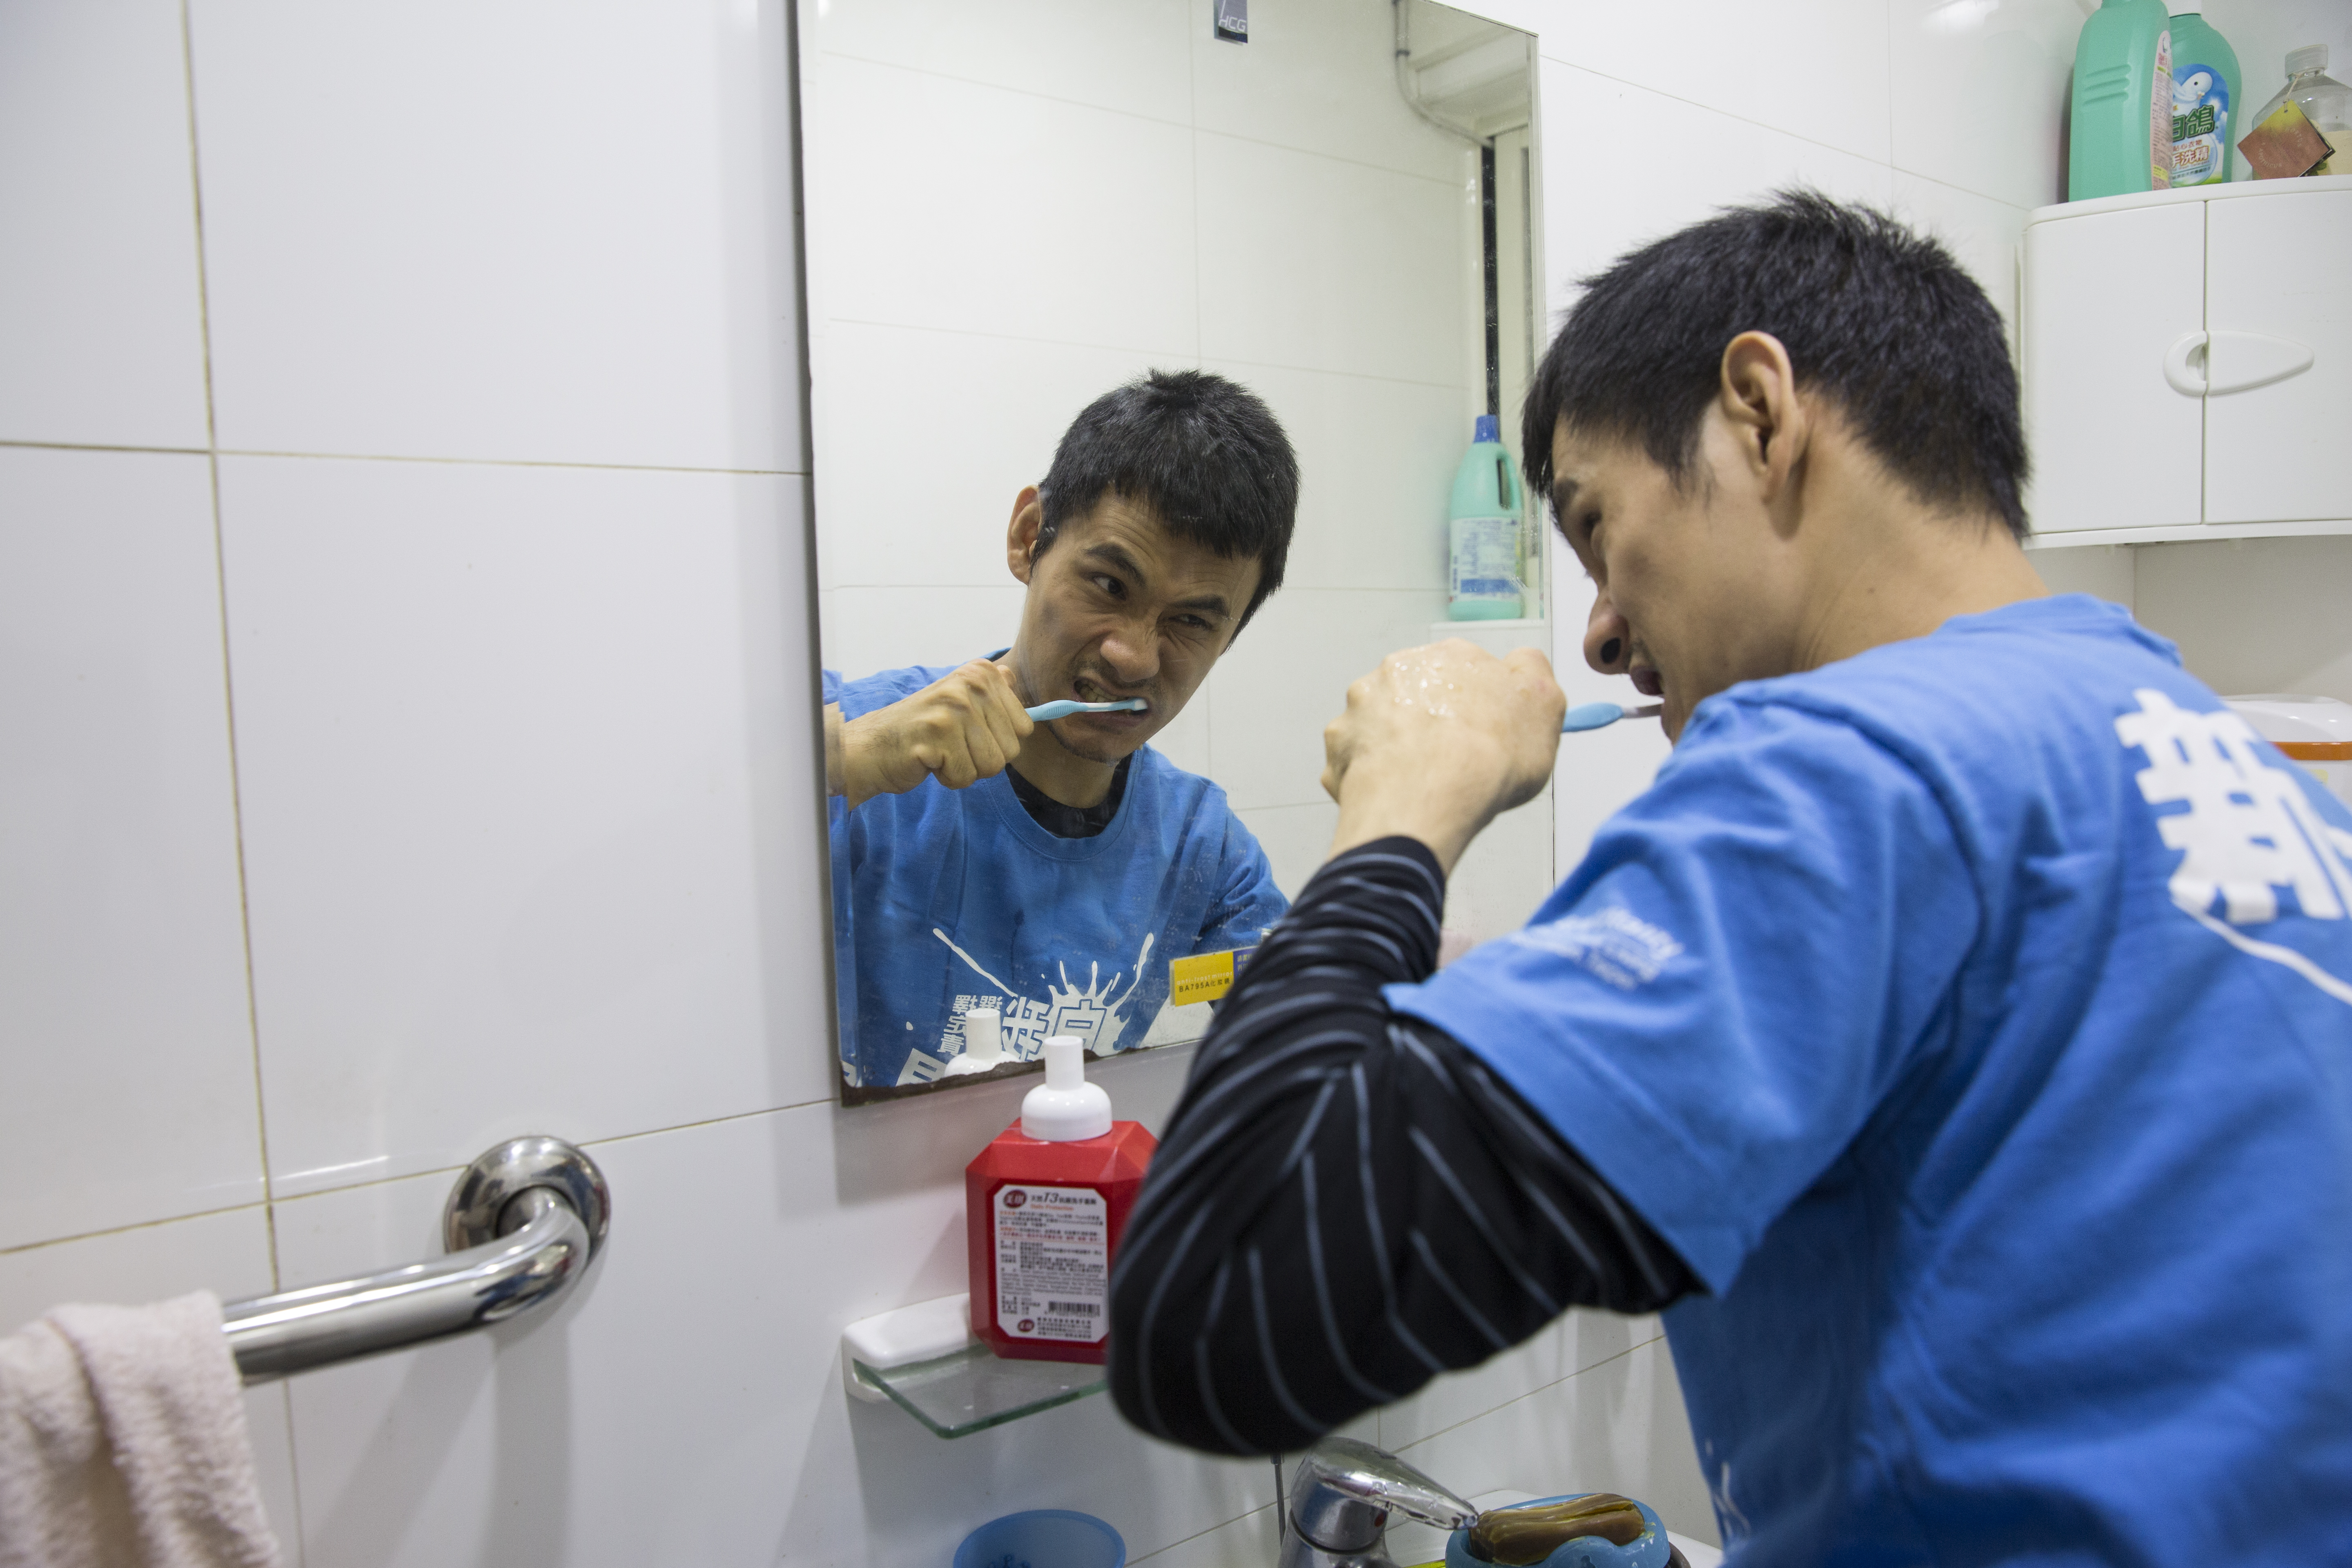 每日的潔牙與洗臉，孫嘉梁能夠自力完成，但洗澡仍需生活助理的協助。